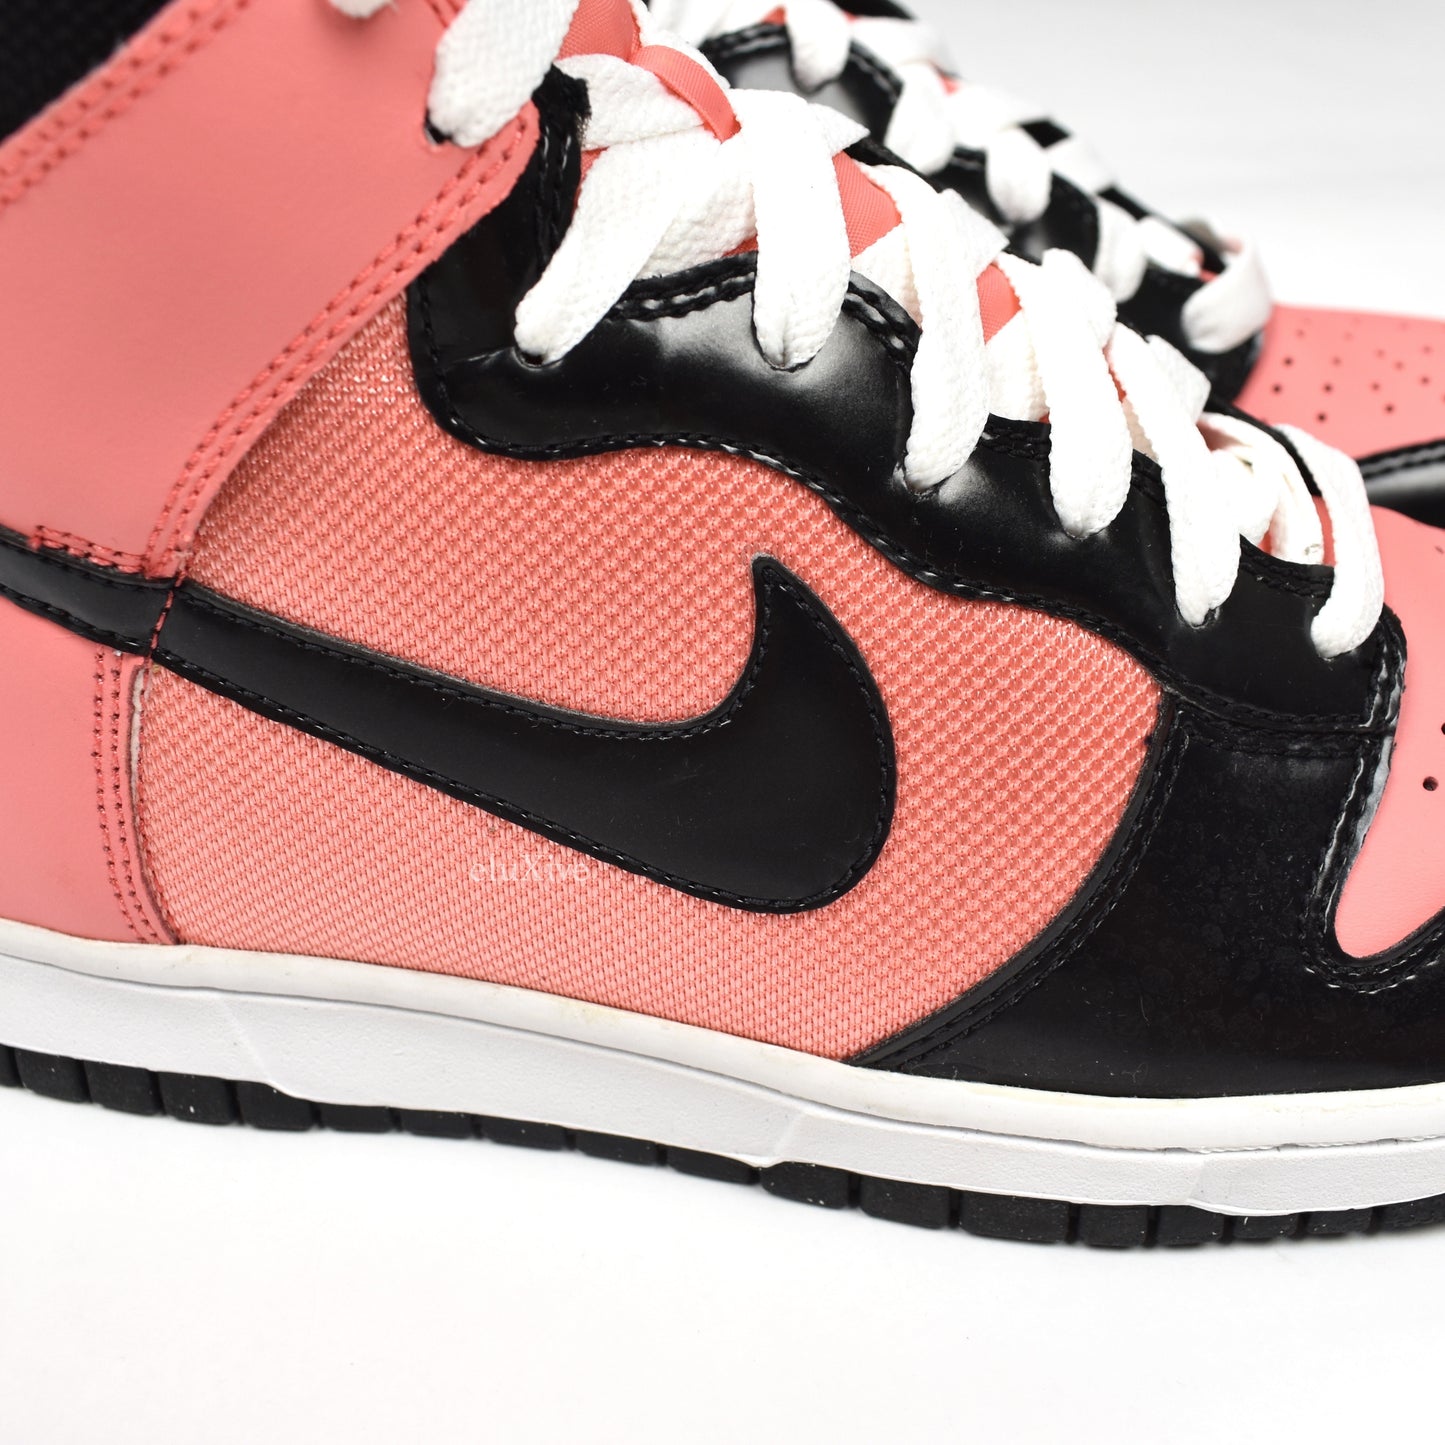 Nike Dunk High (Bright Peach/Black/White)